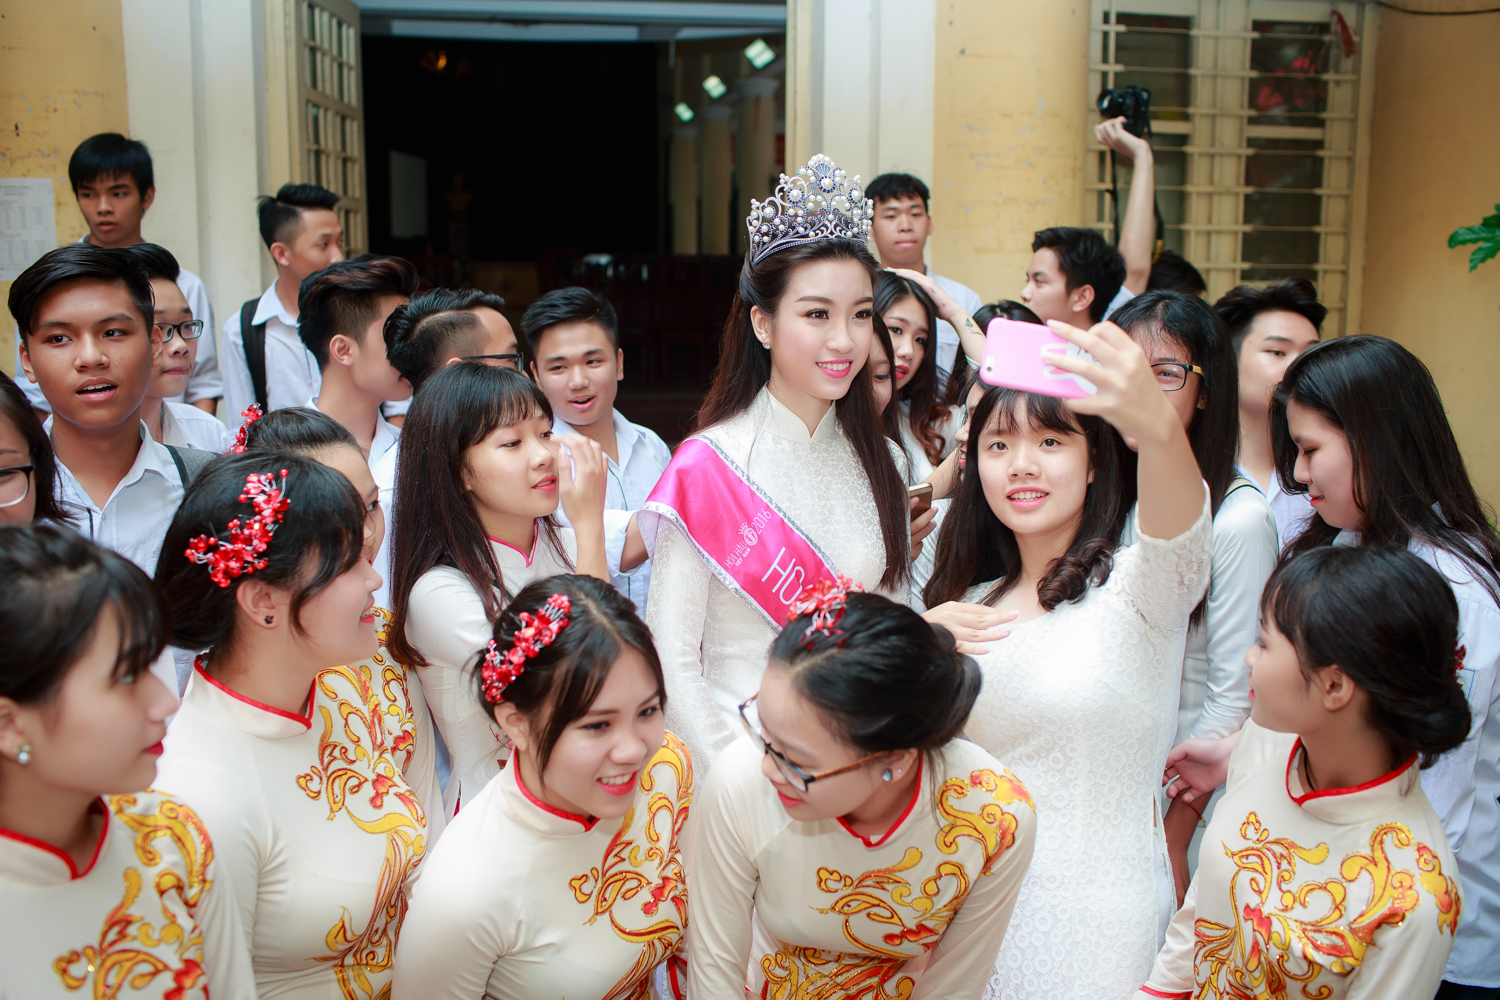  Sáng nay xuất hiện tại trường THPT Việt Đức, Hoa hậu Mỹ Linh diện áo dài trắng muốt như nữ sinh. Cô cũng trang điểm nhẹ nhàng nhưng vẫn vô cùng xinh đẹp. Ngay từ khi xuất hiện cô đã nhận được sự chào đón nồng nhiệt của các thầy cô giáo và các em học sinh.